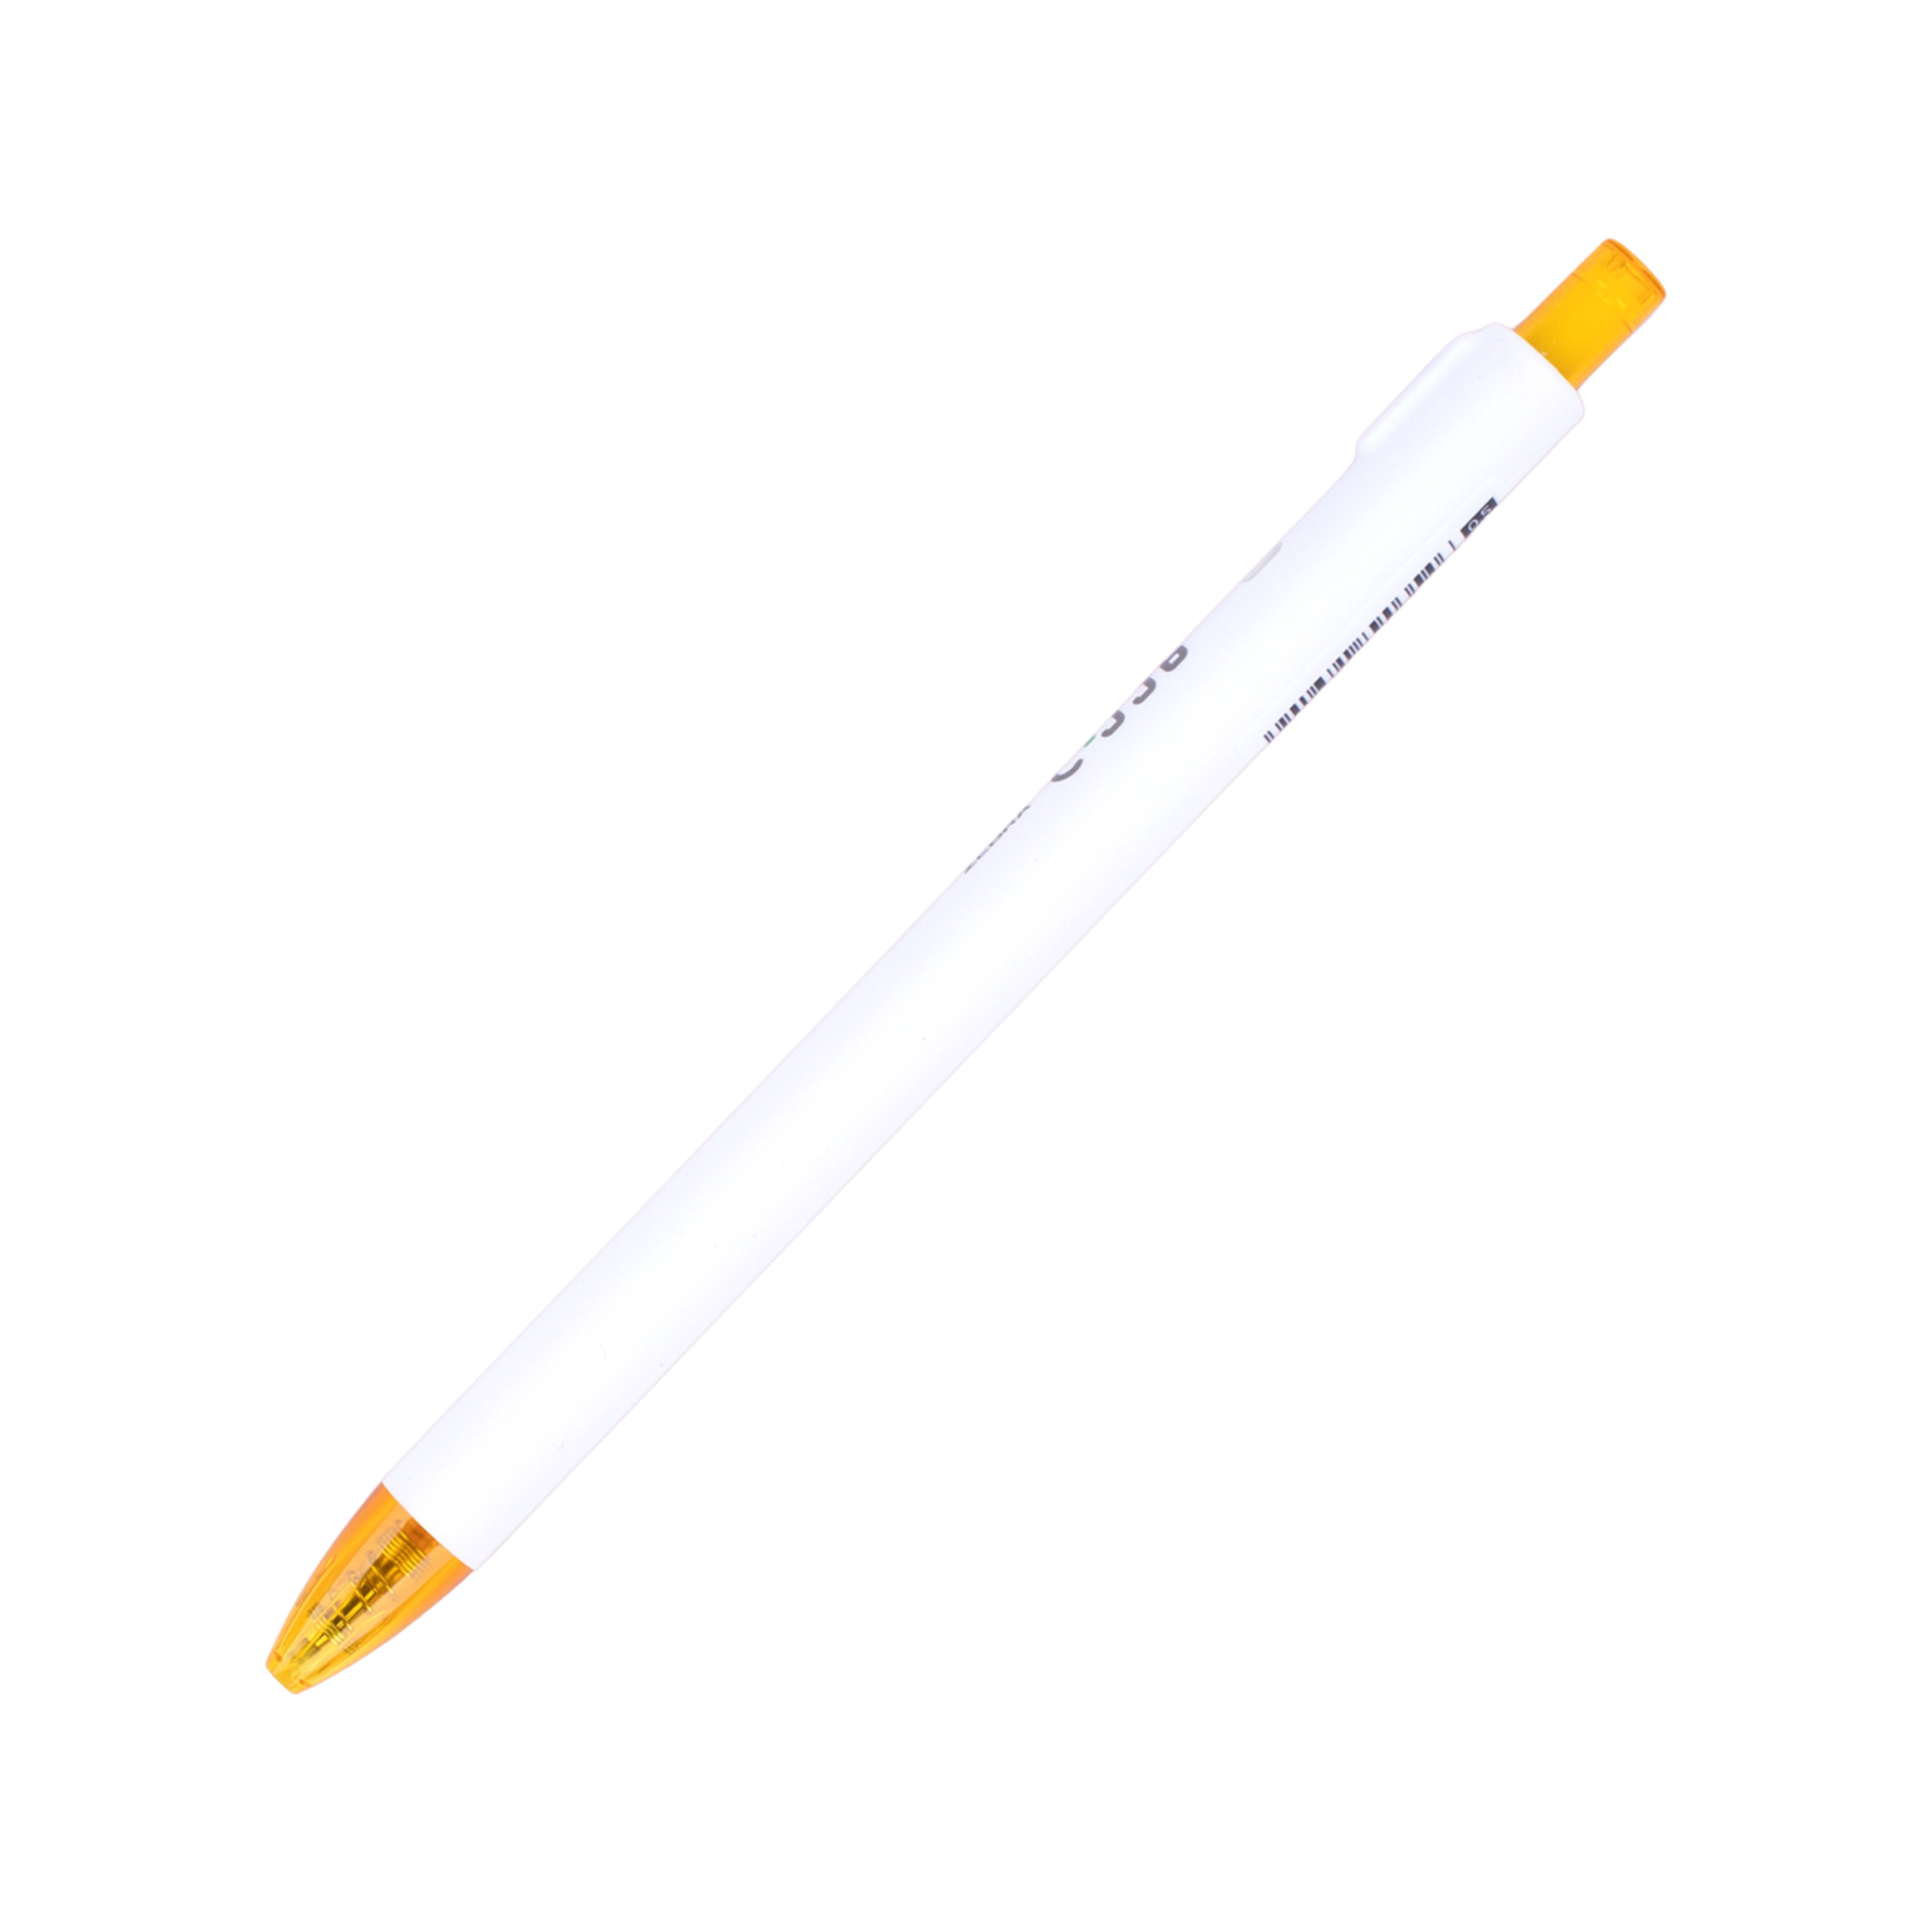 Zebra Rainbow Retractable Gel Pen 0.5mm - Yellow